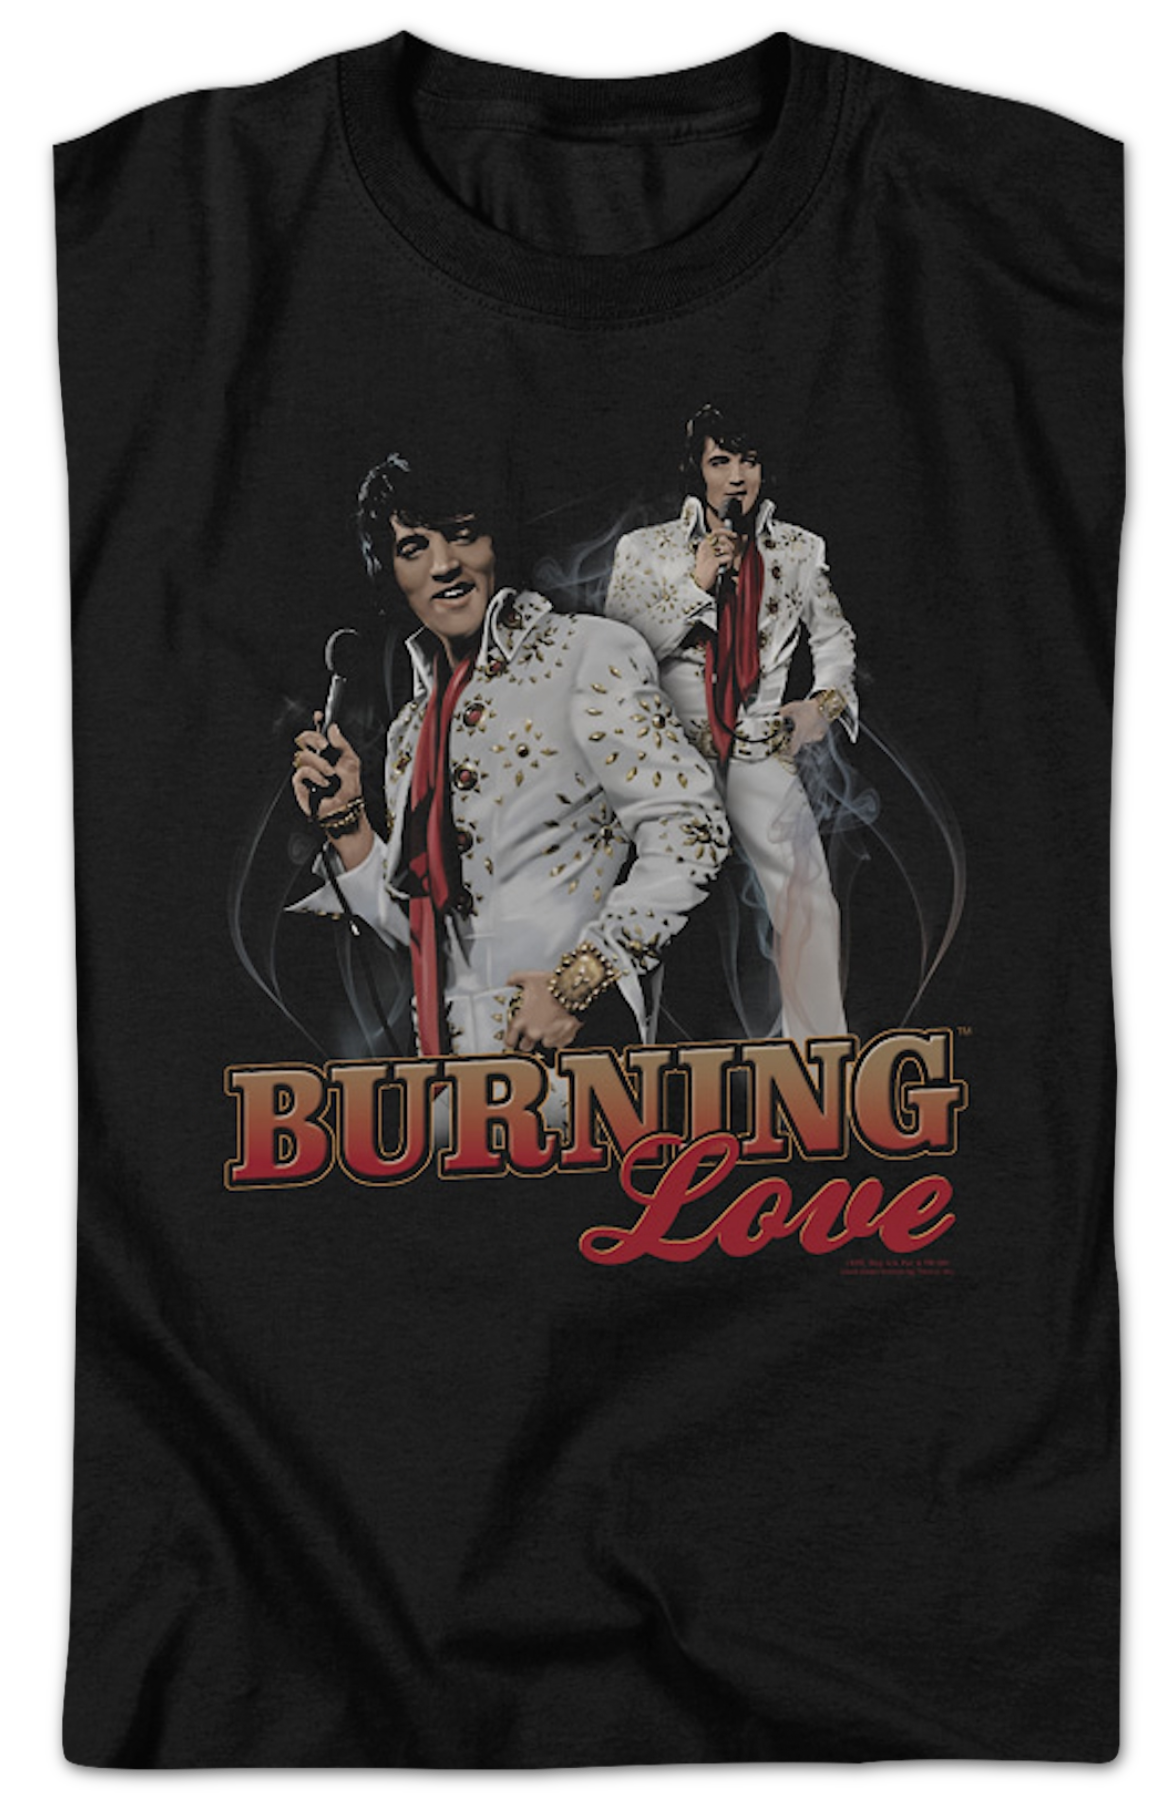 Burning Love Collage Elvis Presley T-Shirt